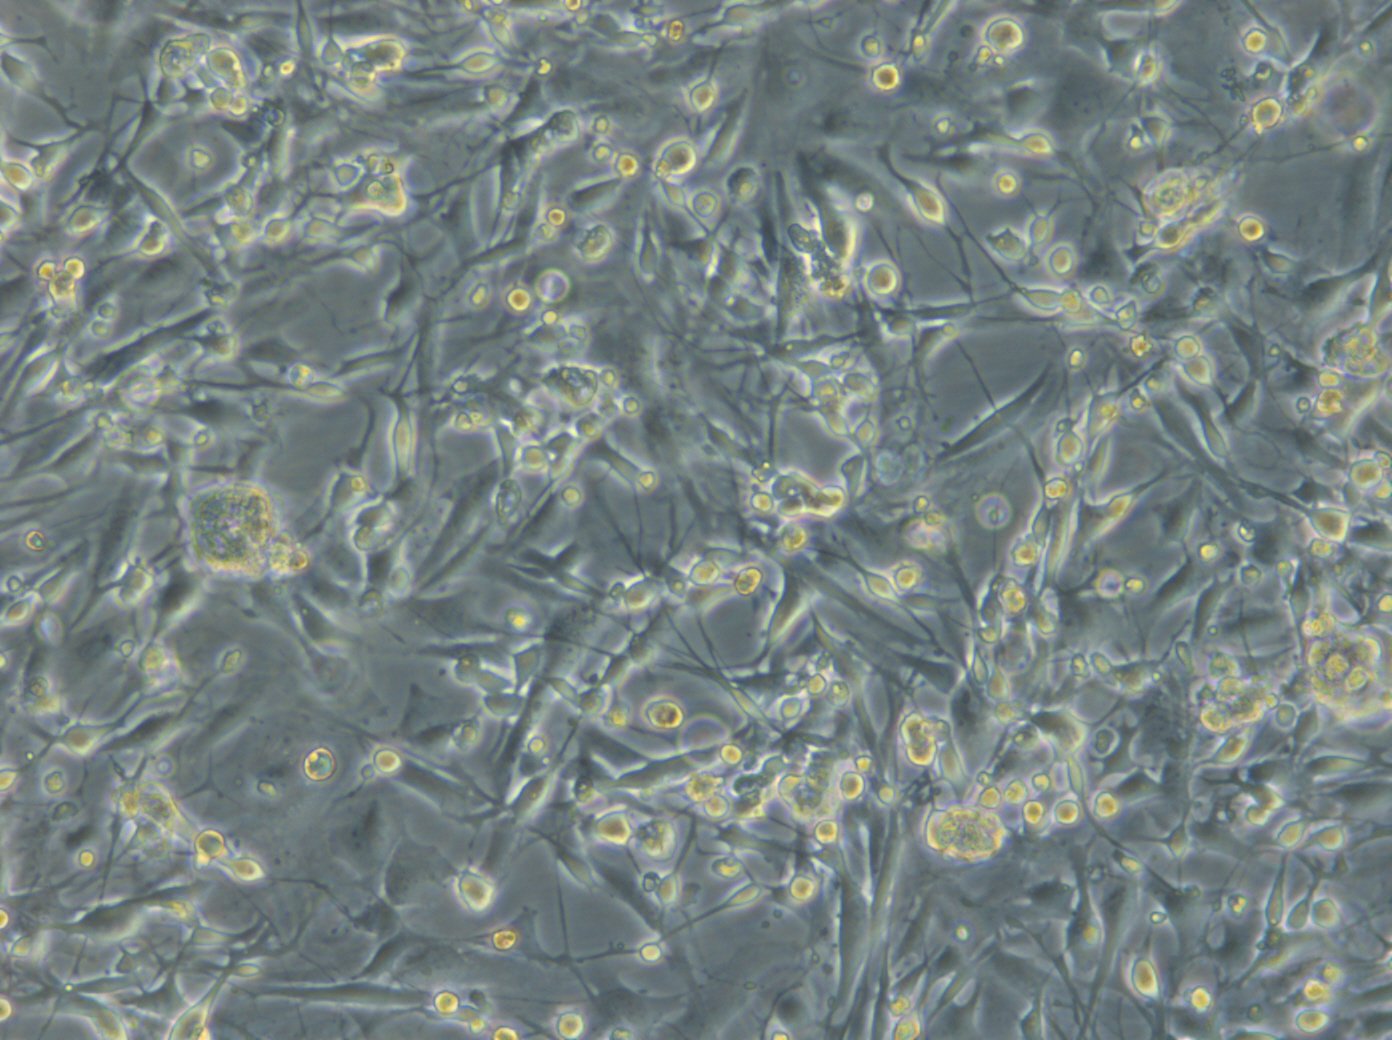 HROG06 T0 M2 Cells